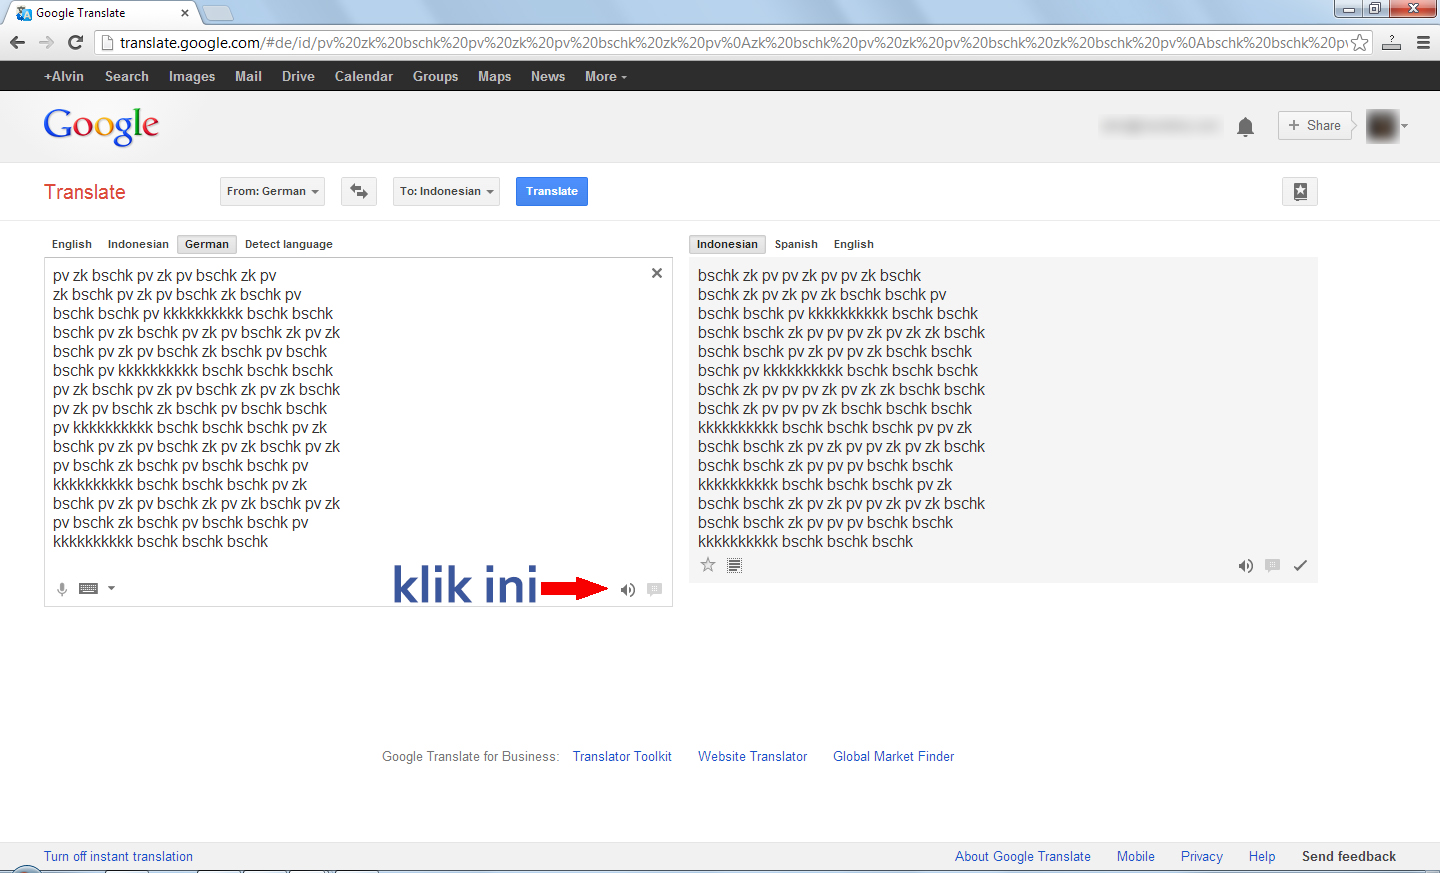 Google Translate Ternyata Juga Mahir Beatbox Merdekacom